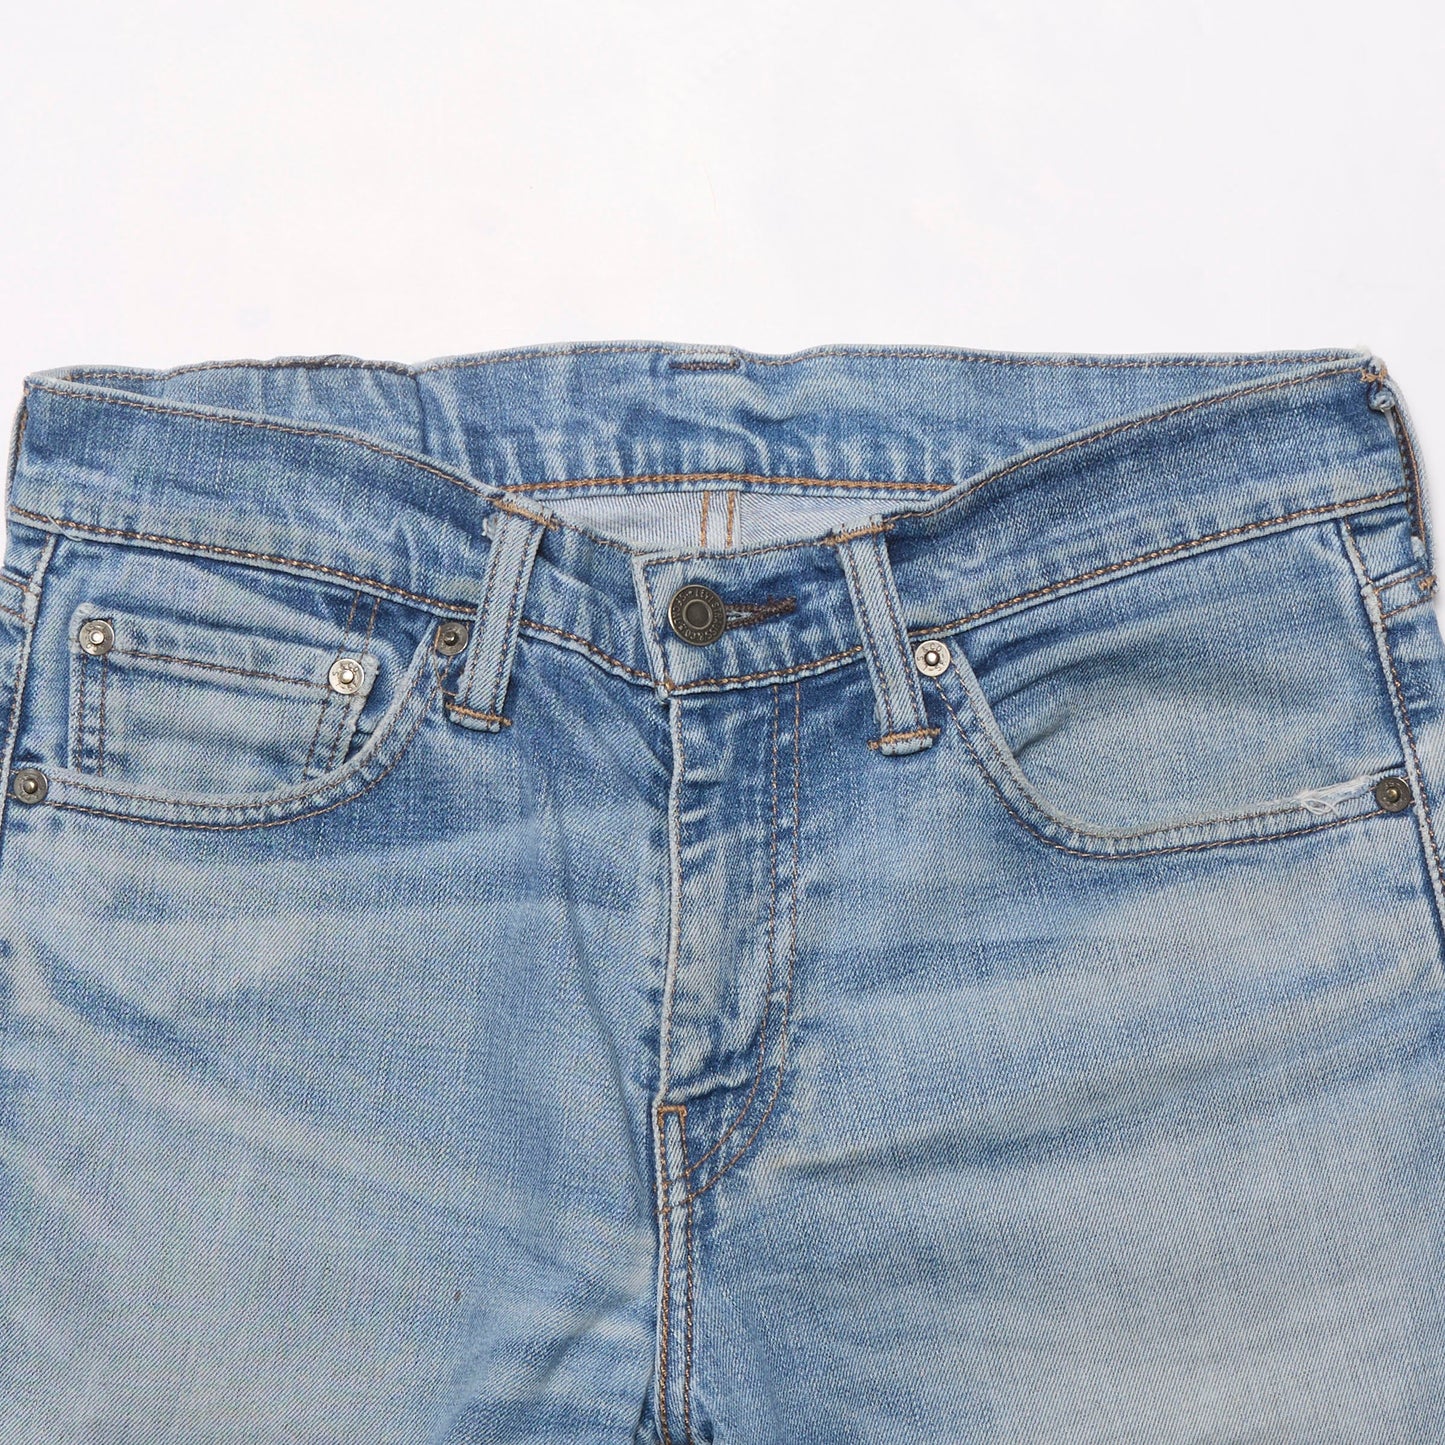 Levis Straight Cut Denim Jeans - W29" L32"